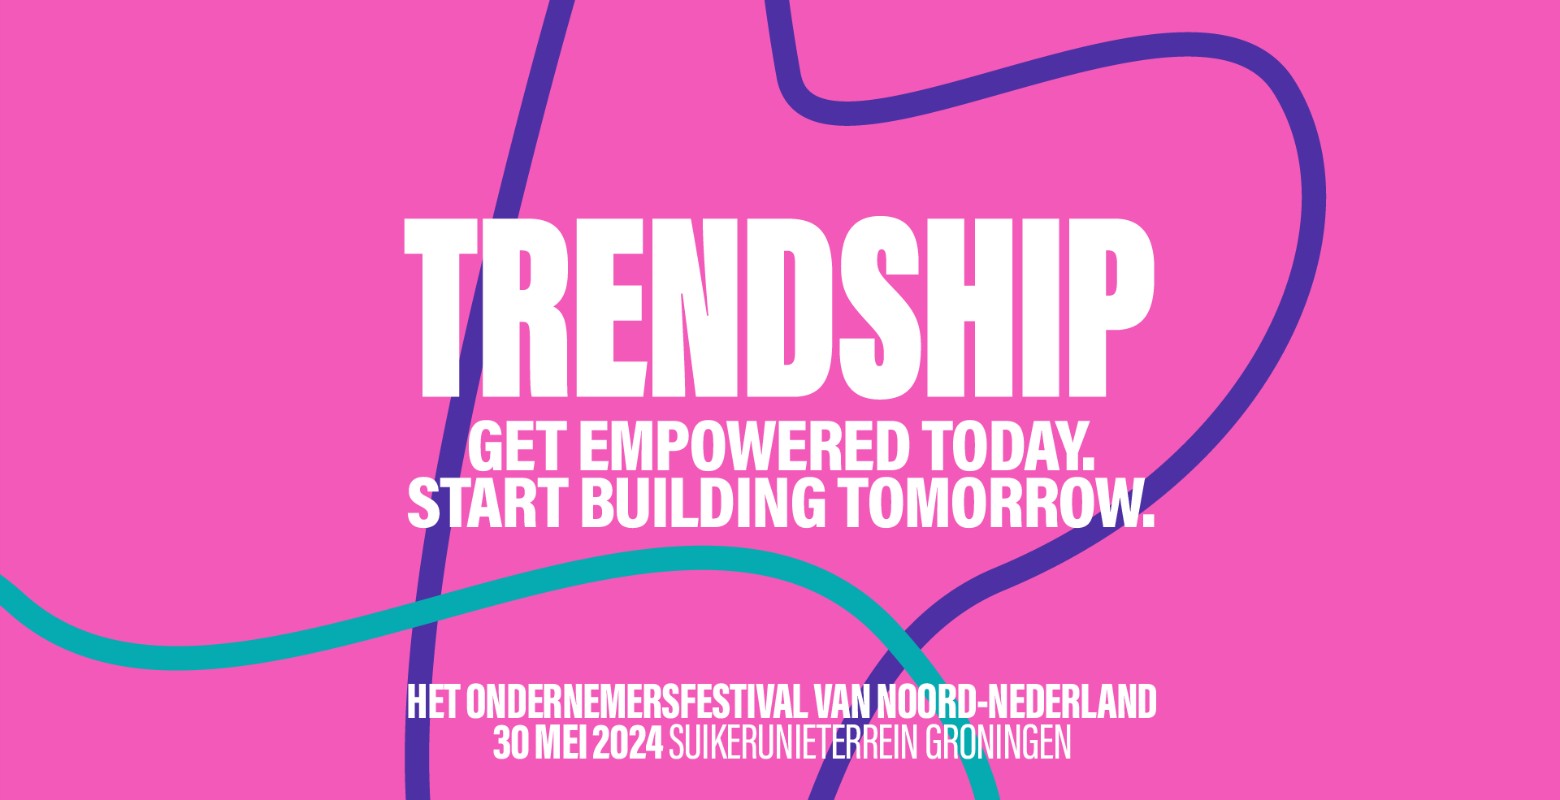 Afb 2: Trendship keert terug als groot ondernemersfestival